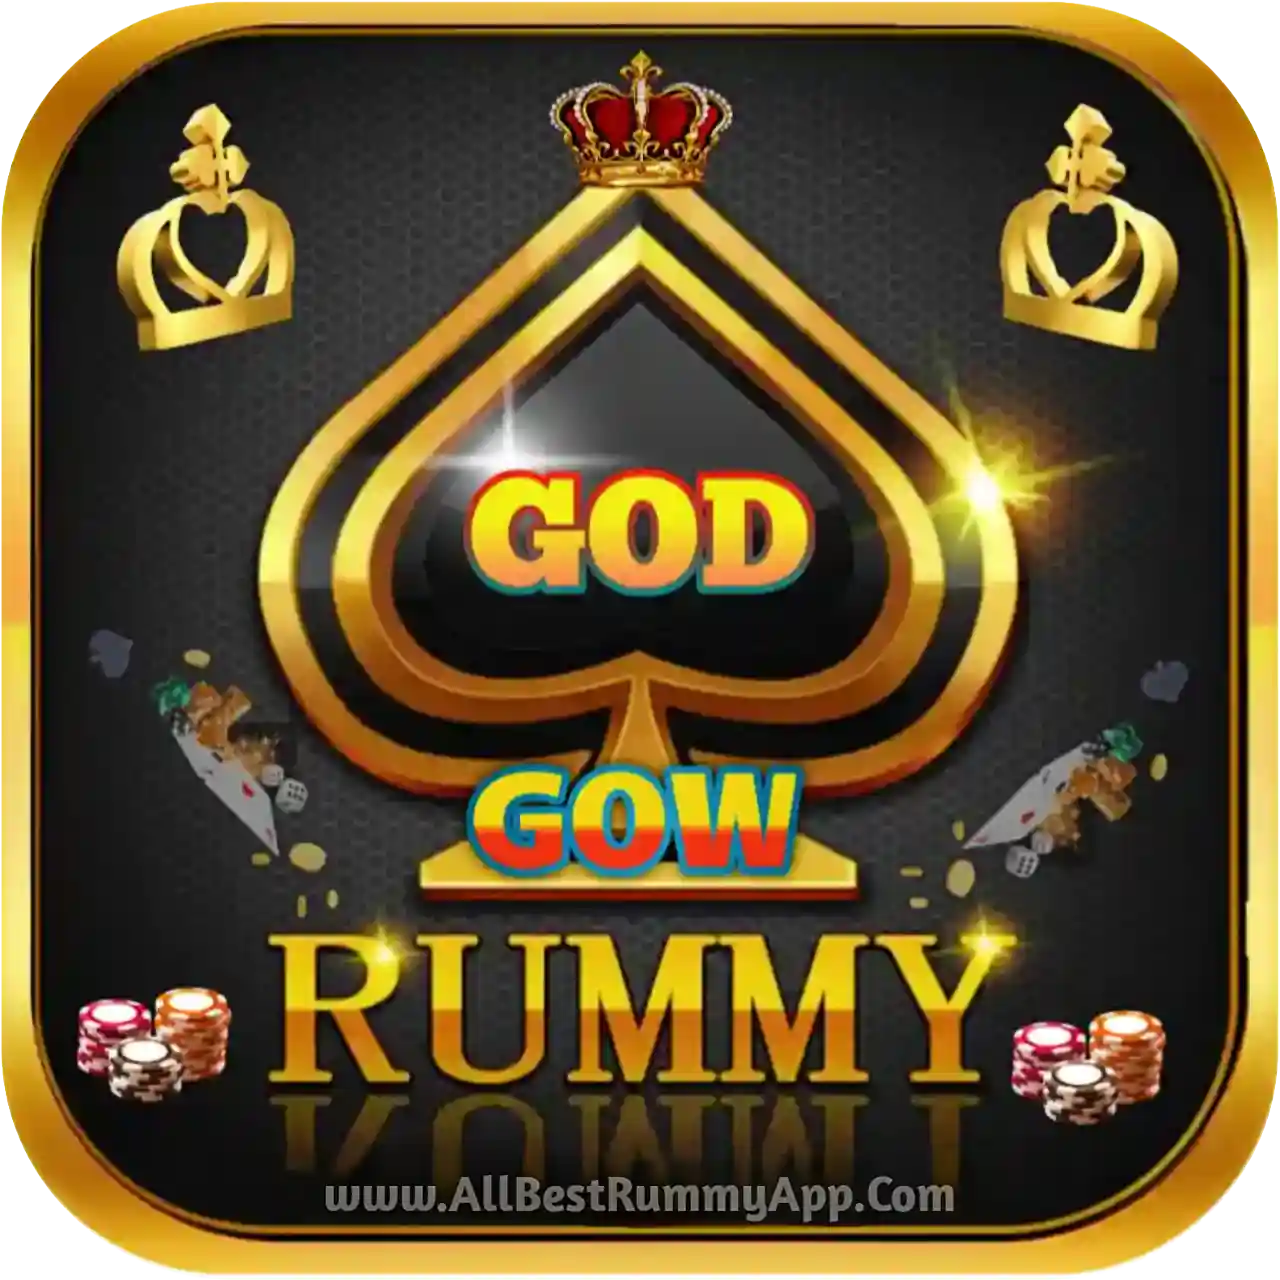 God Cow Rummy Logo - India Rummy APk